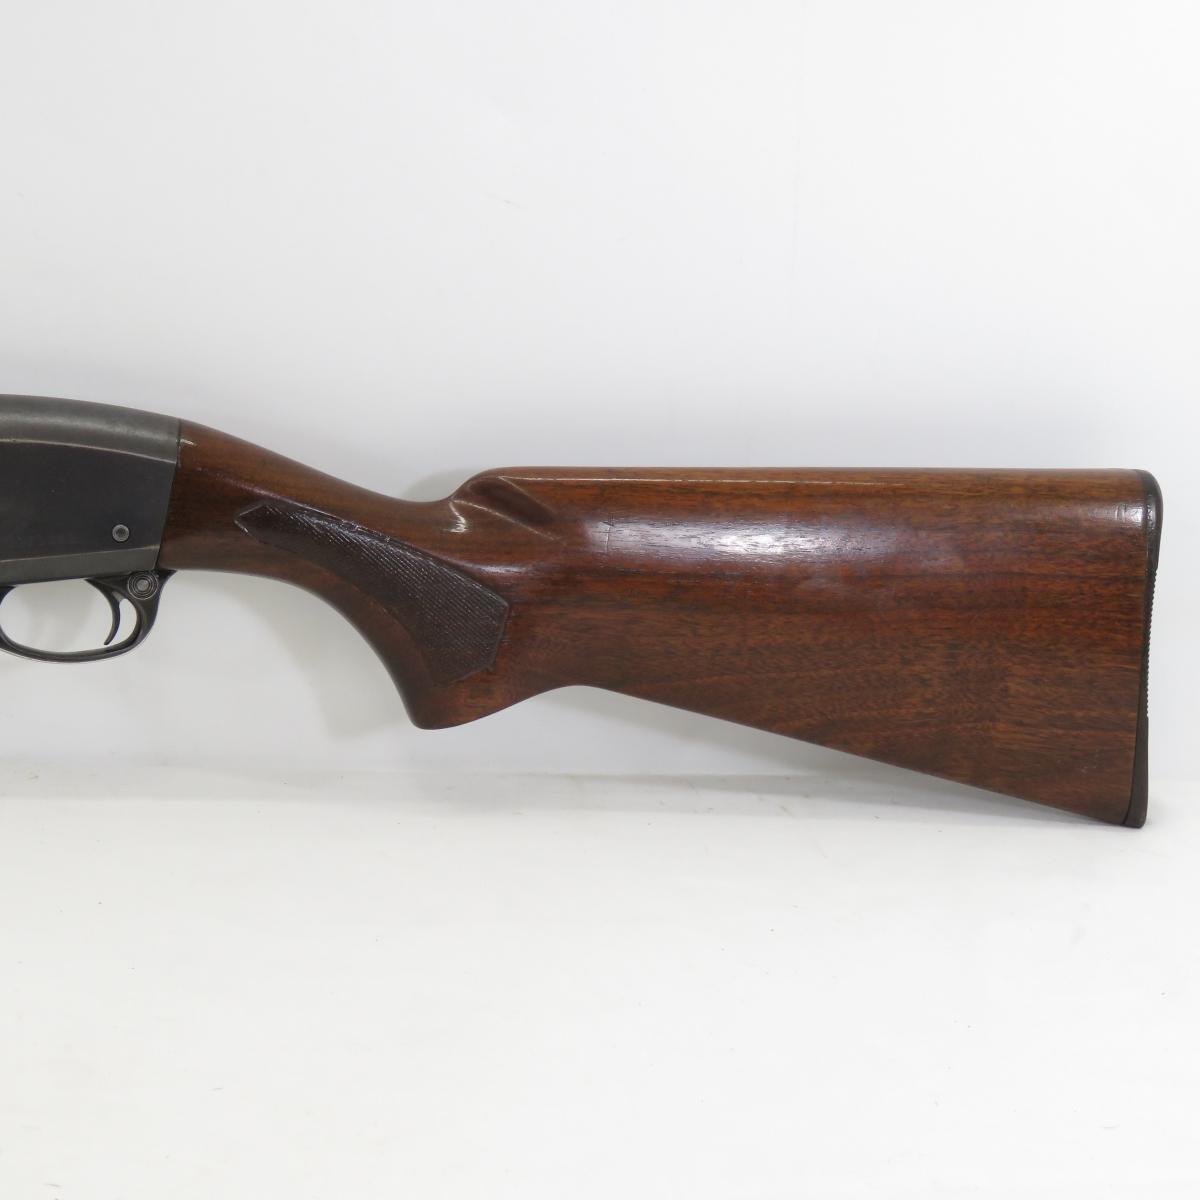 1952 Remington 11-48 16GA Shotgun